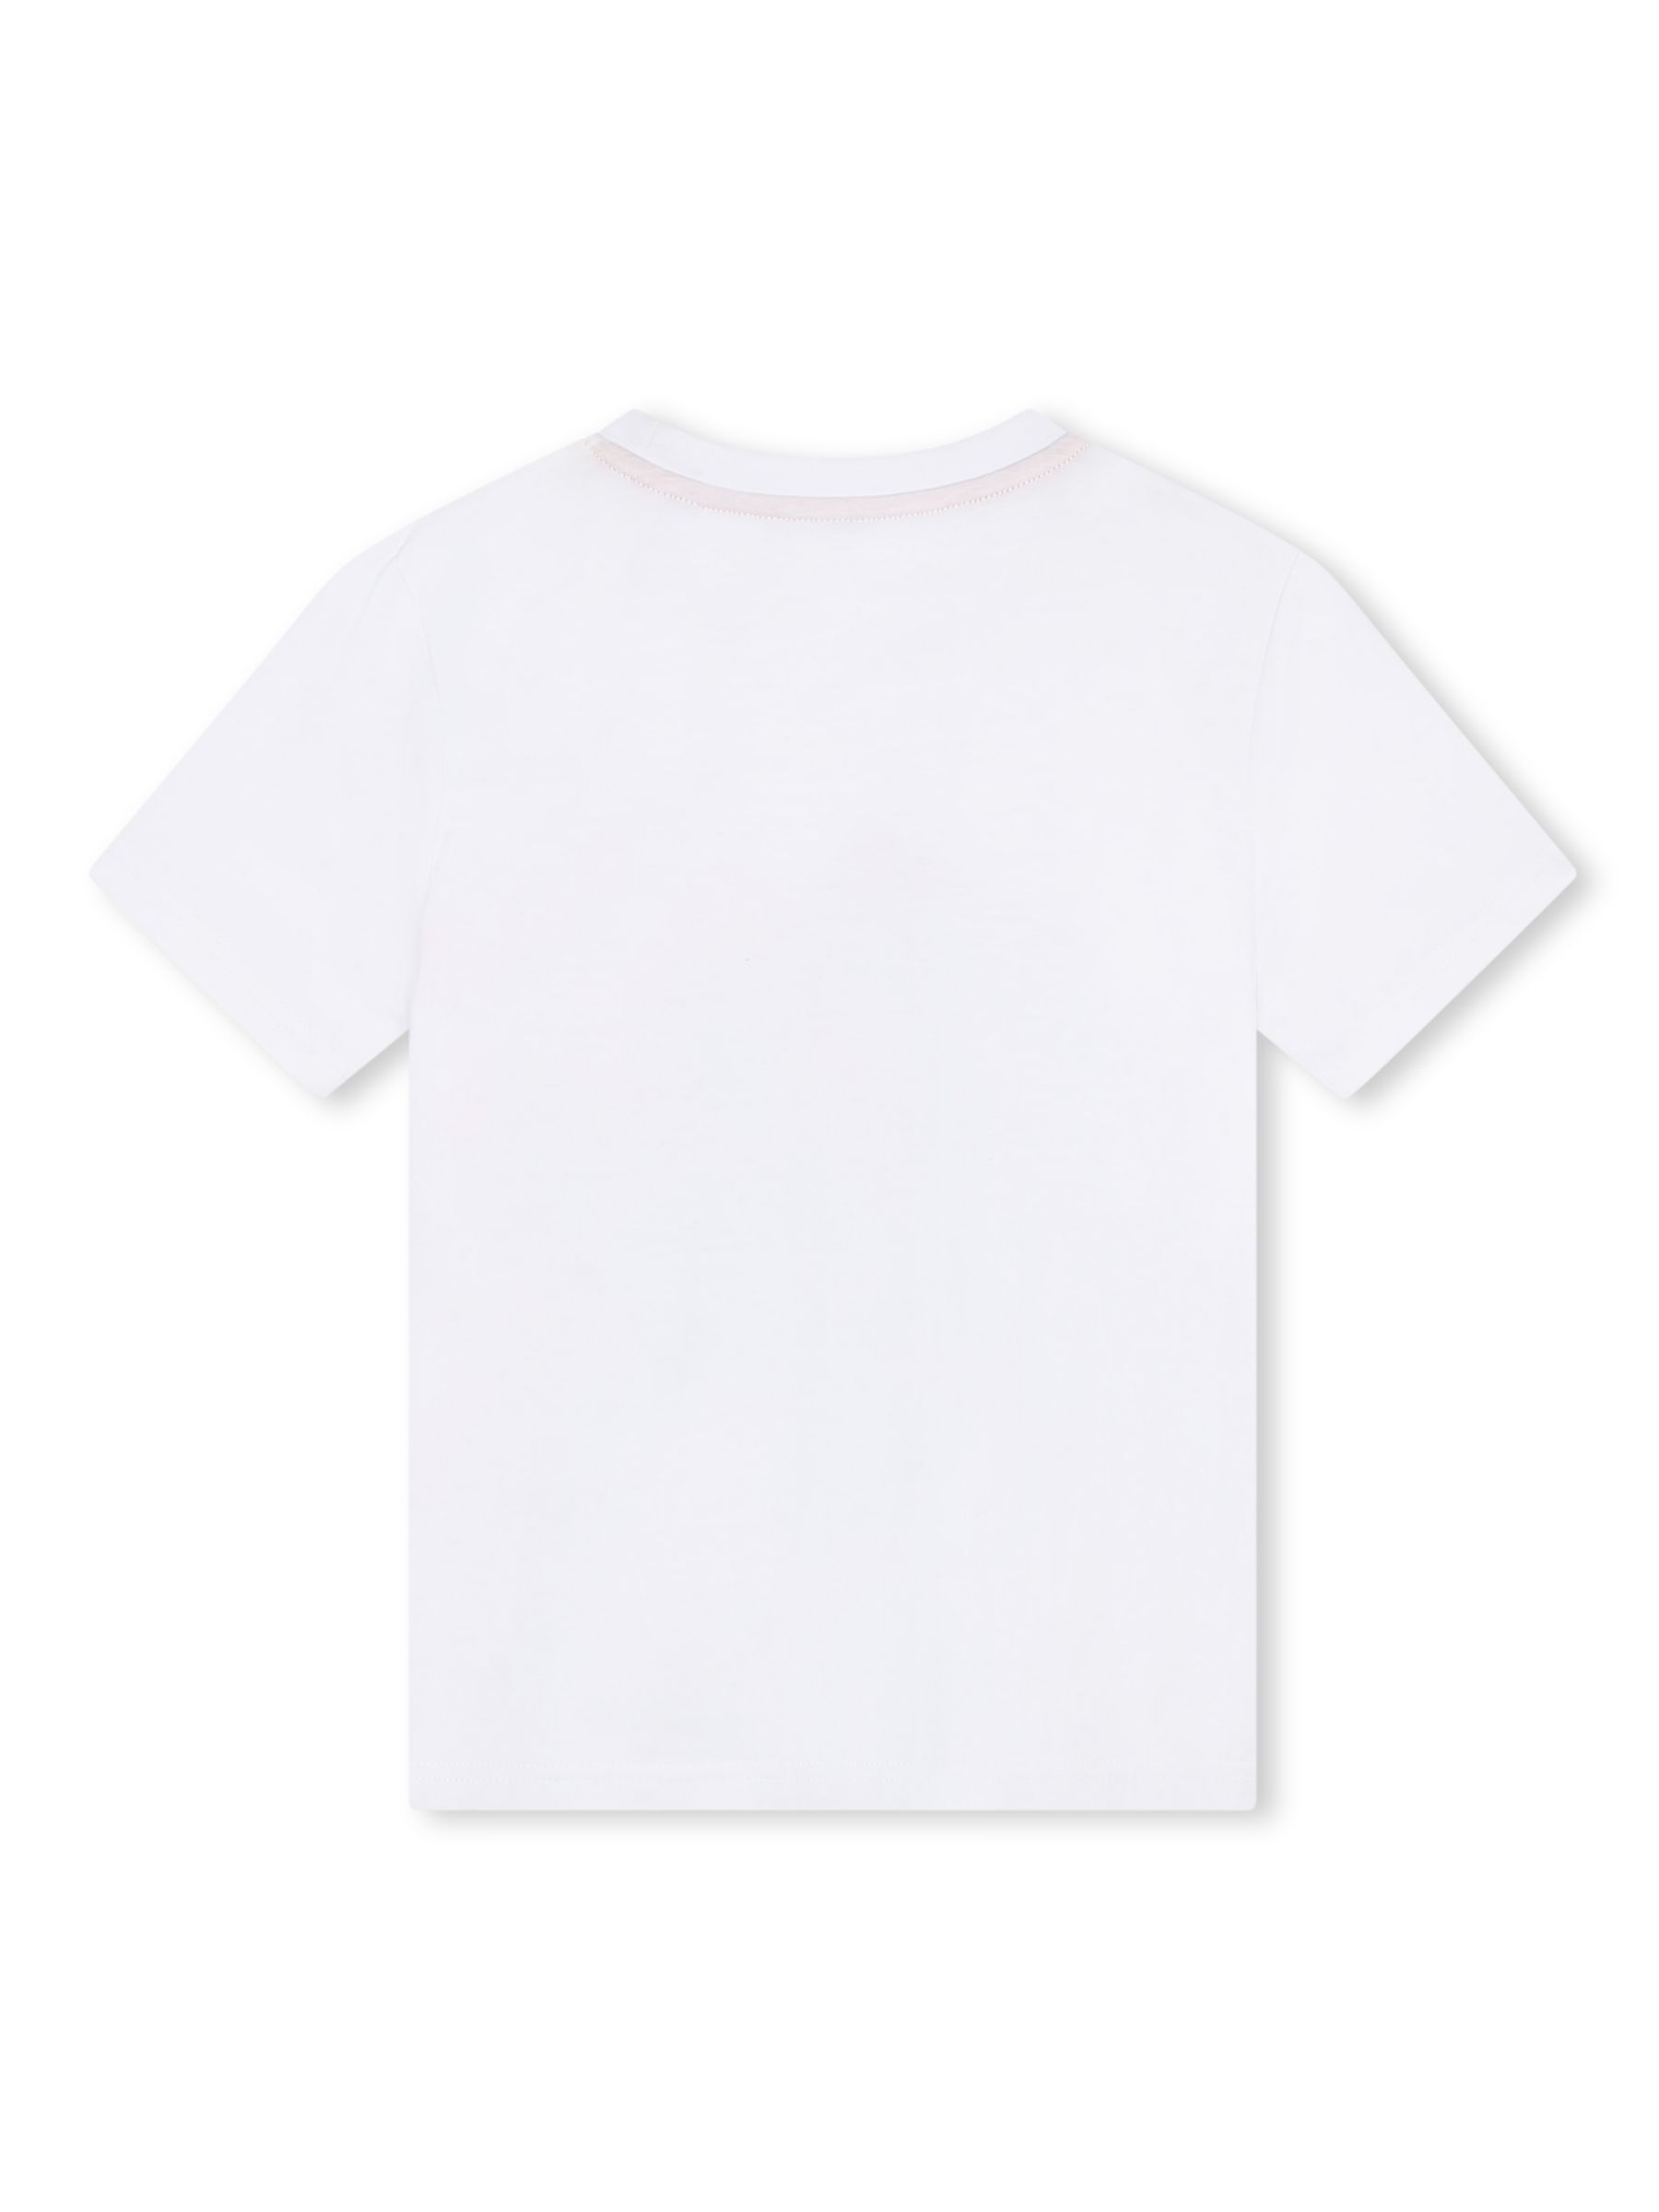 Timberland Kids' Logo Mountain Graphic Print T-Shirt, White, 4 years